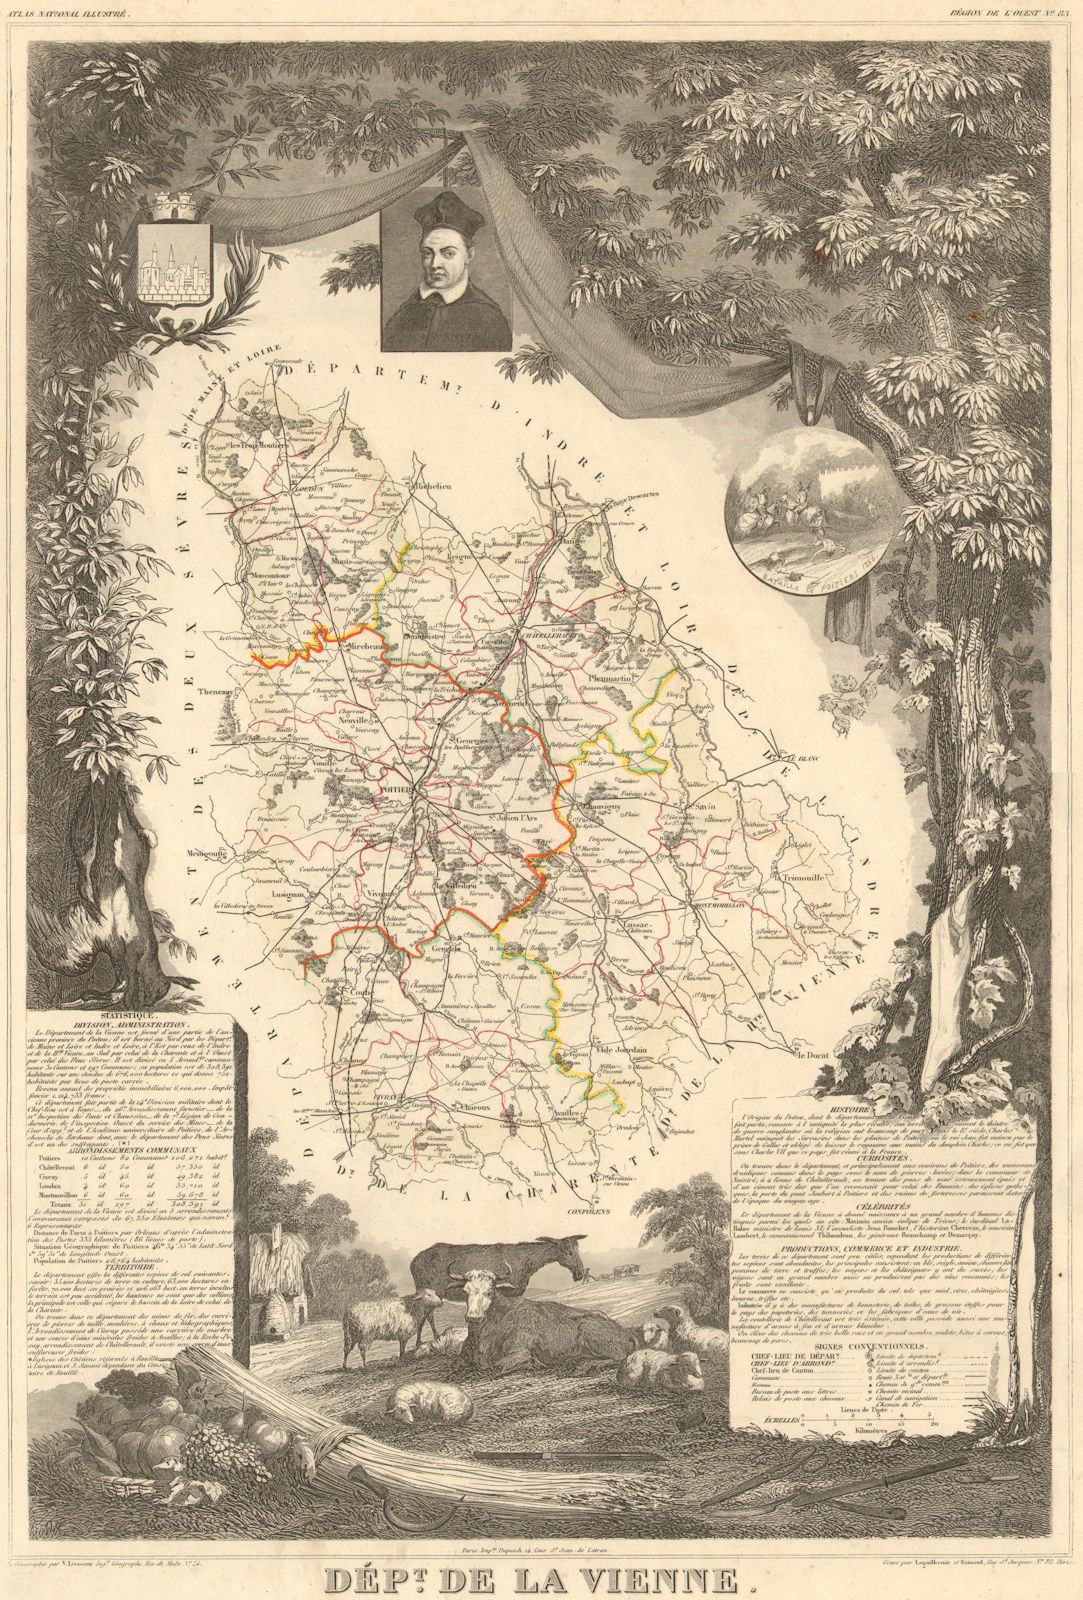 Département de la VIENNE. Decorative antique map/carte by Victor LEVASSEUR 1852